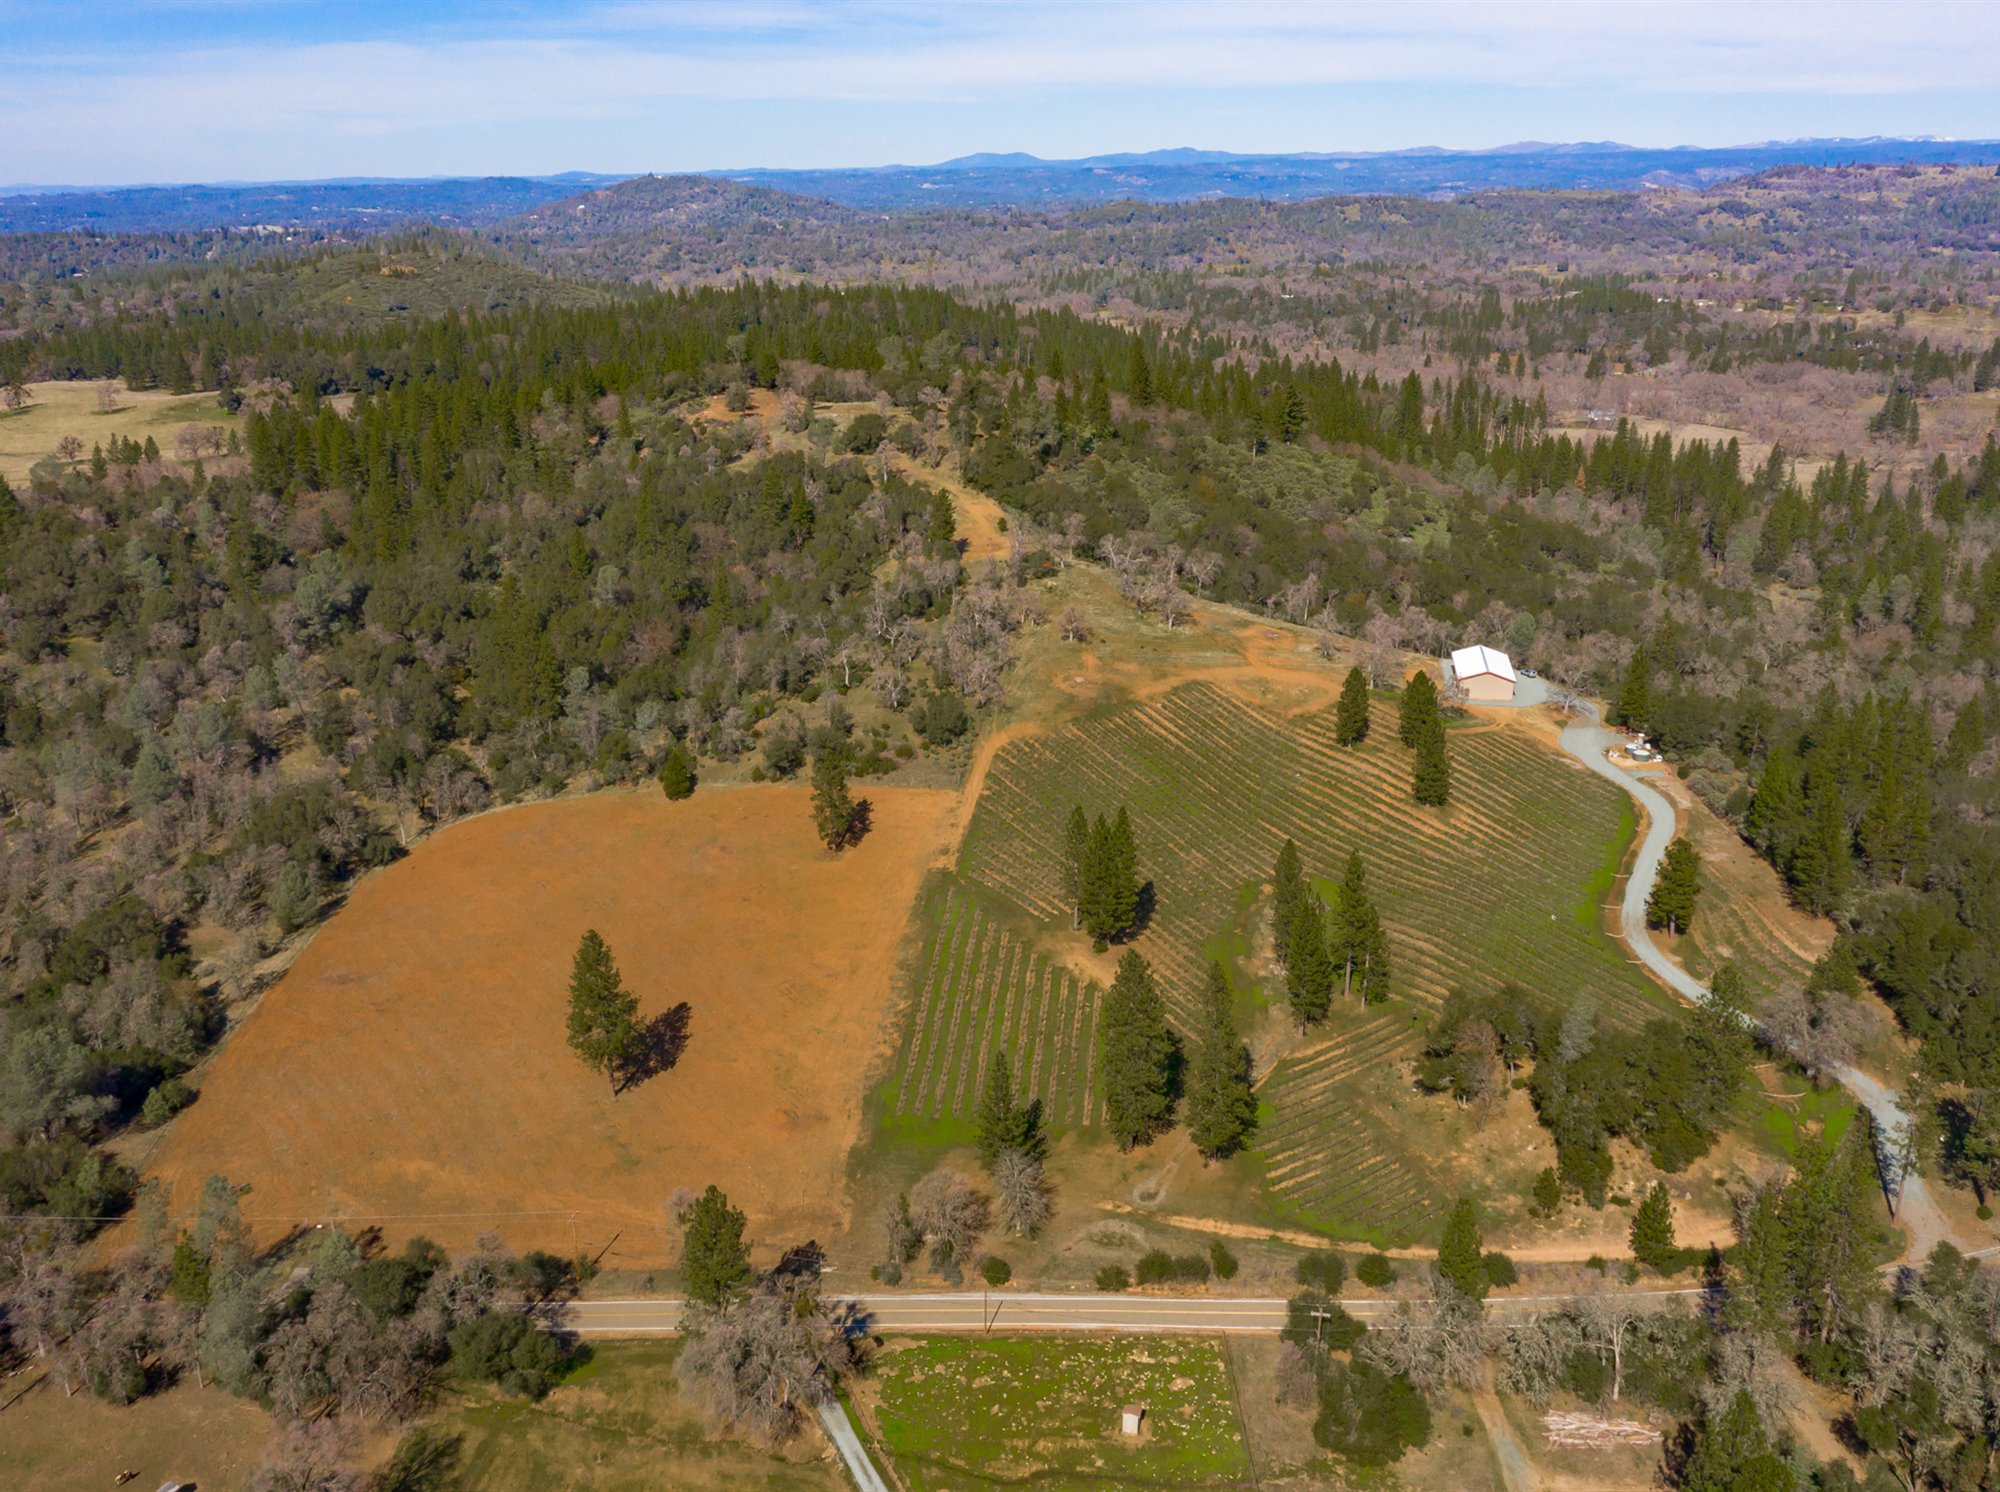 Sierra Foothills vineyards and wineri